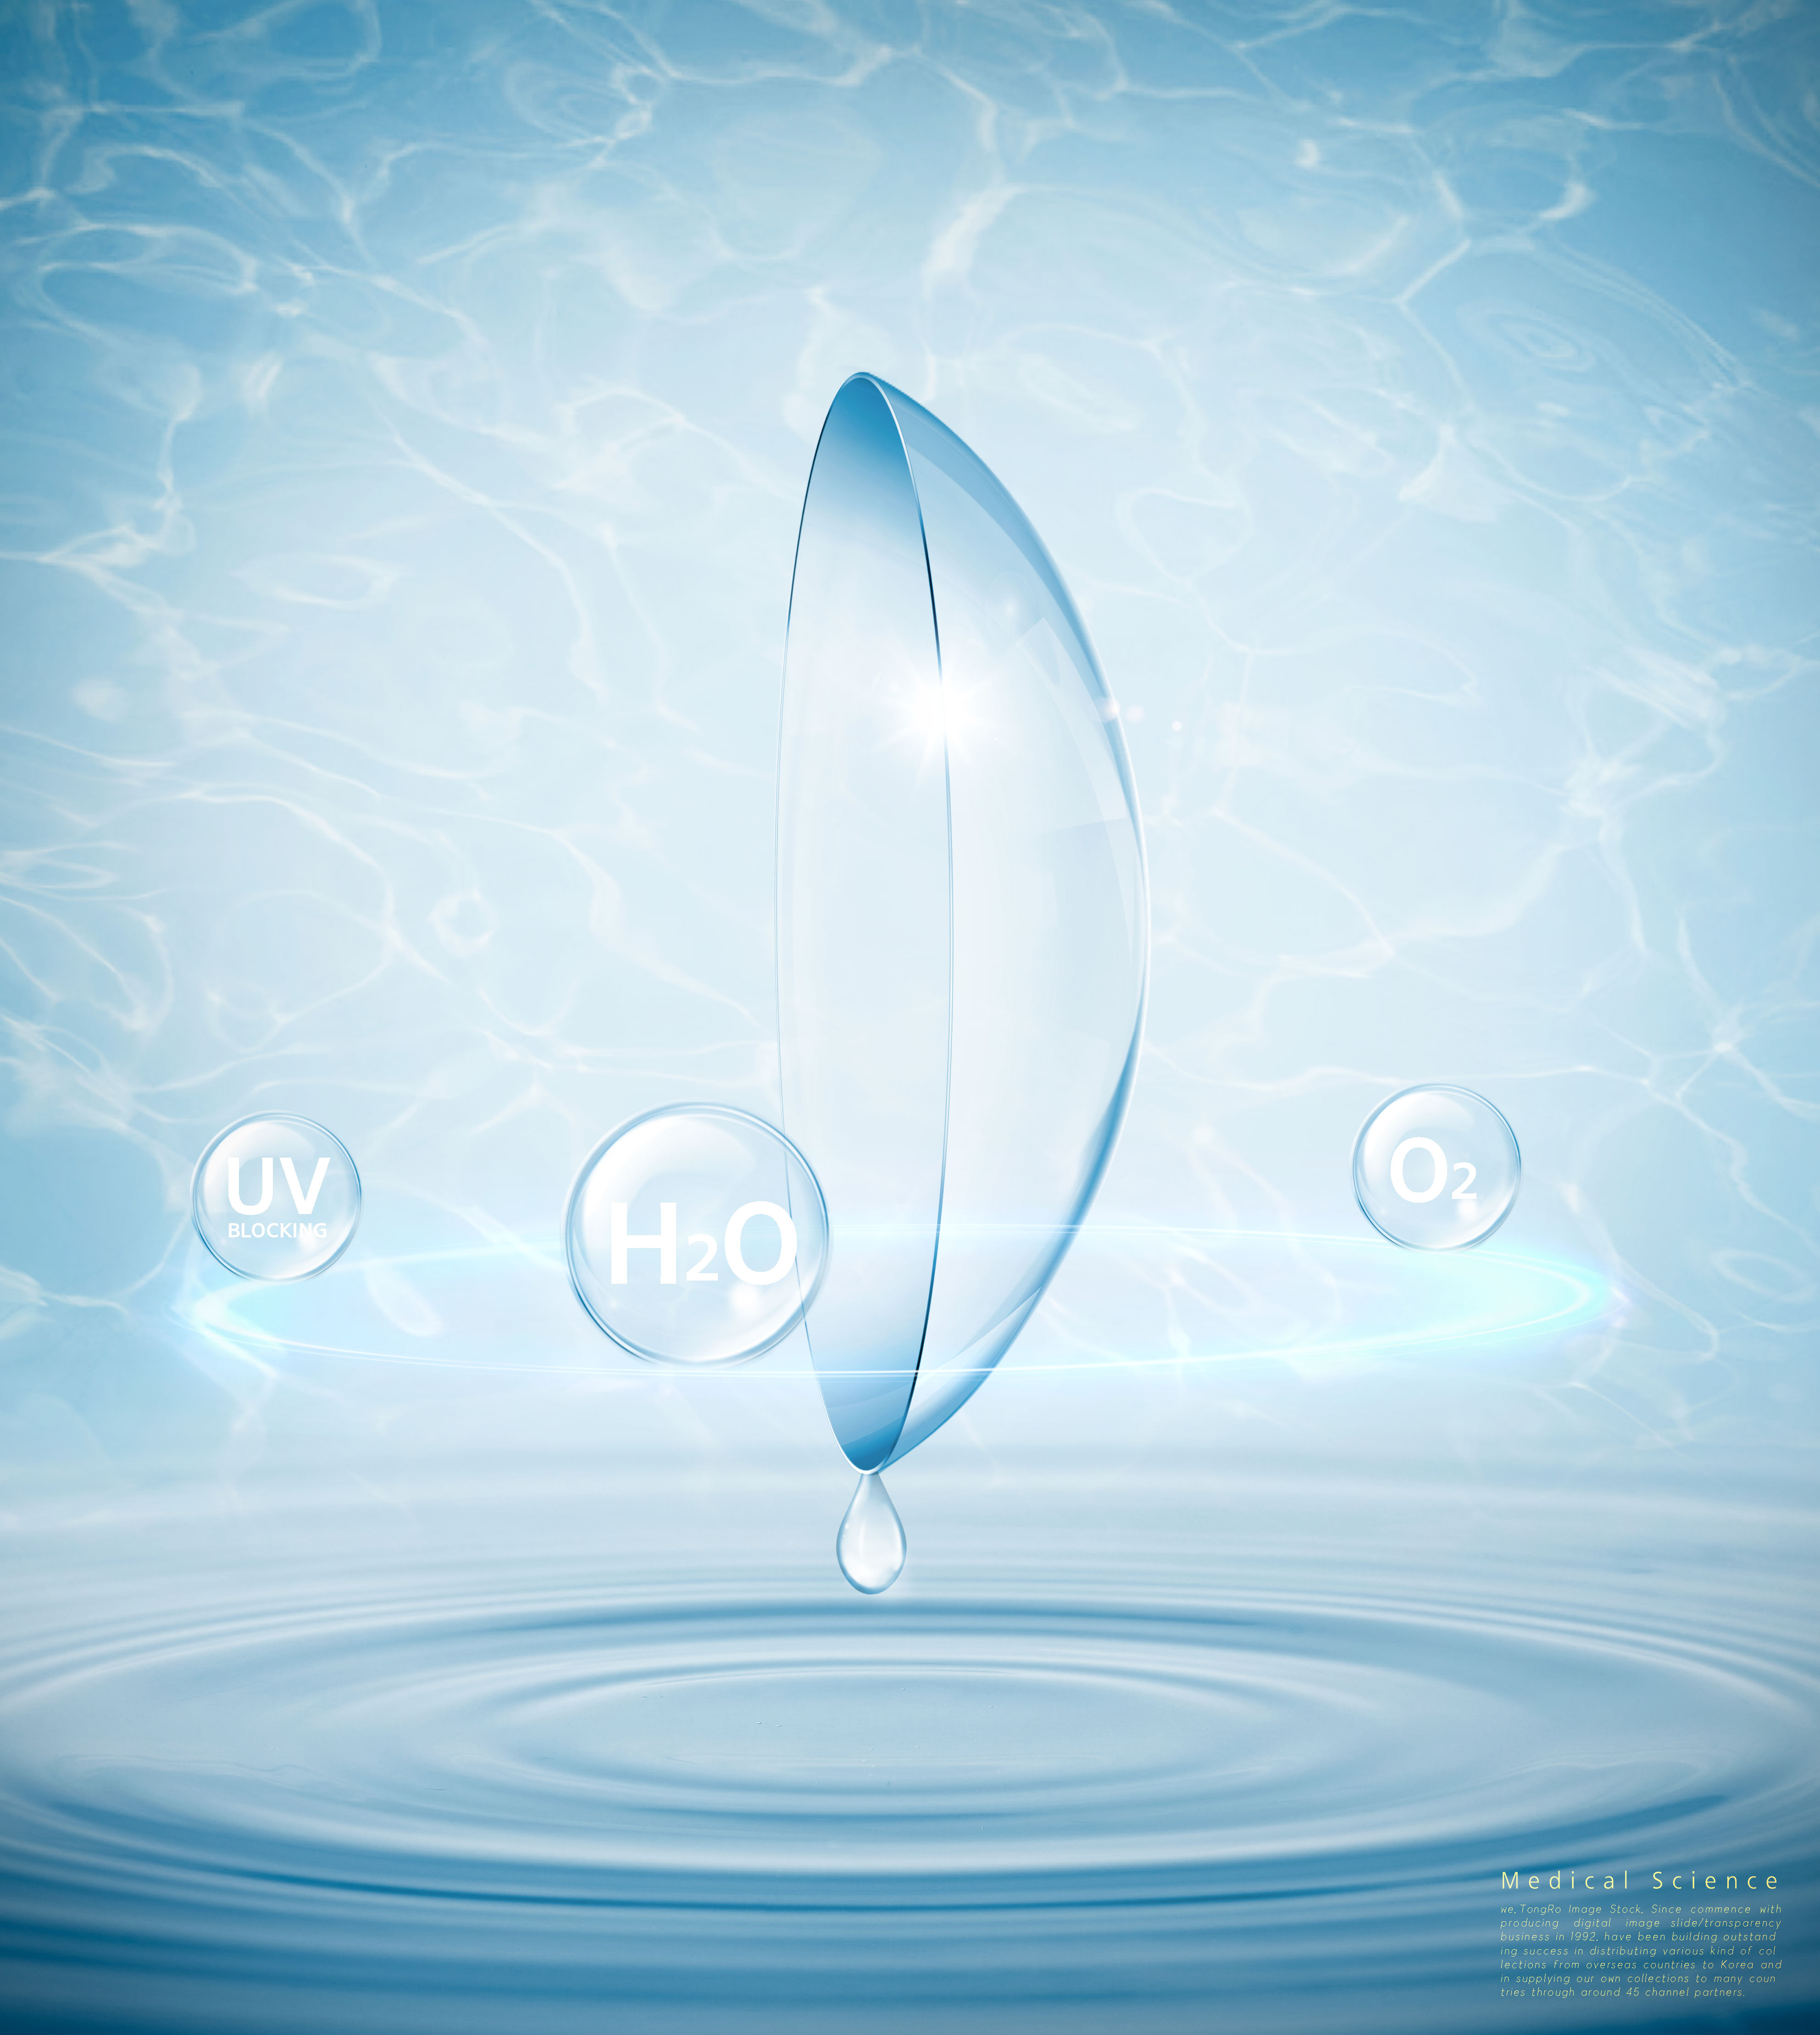 水分子生物科学主题海报设计套装[PSD]插图(5)